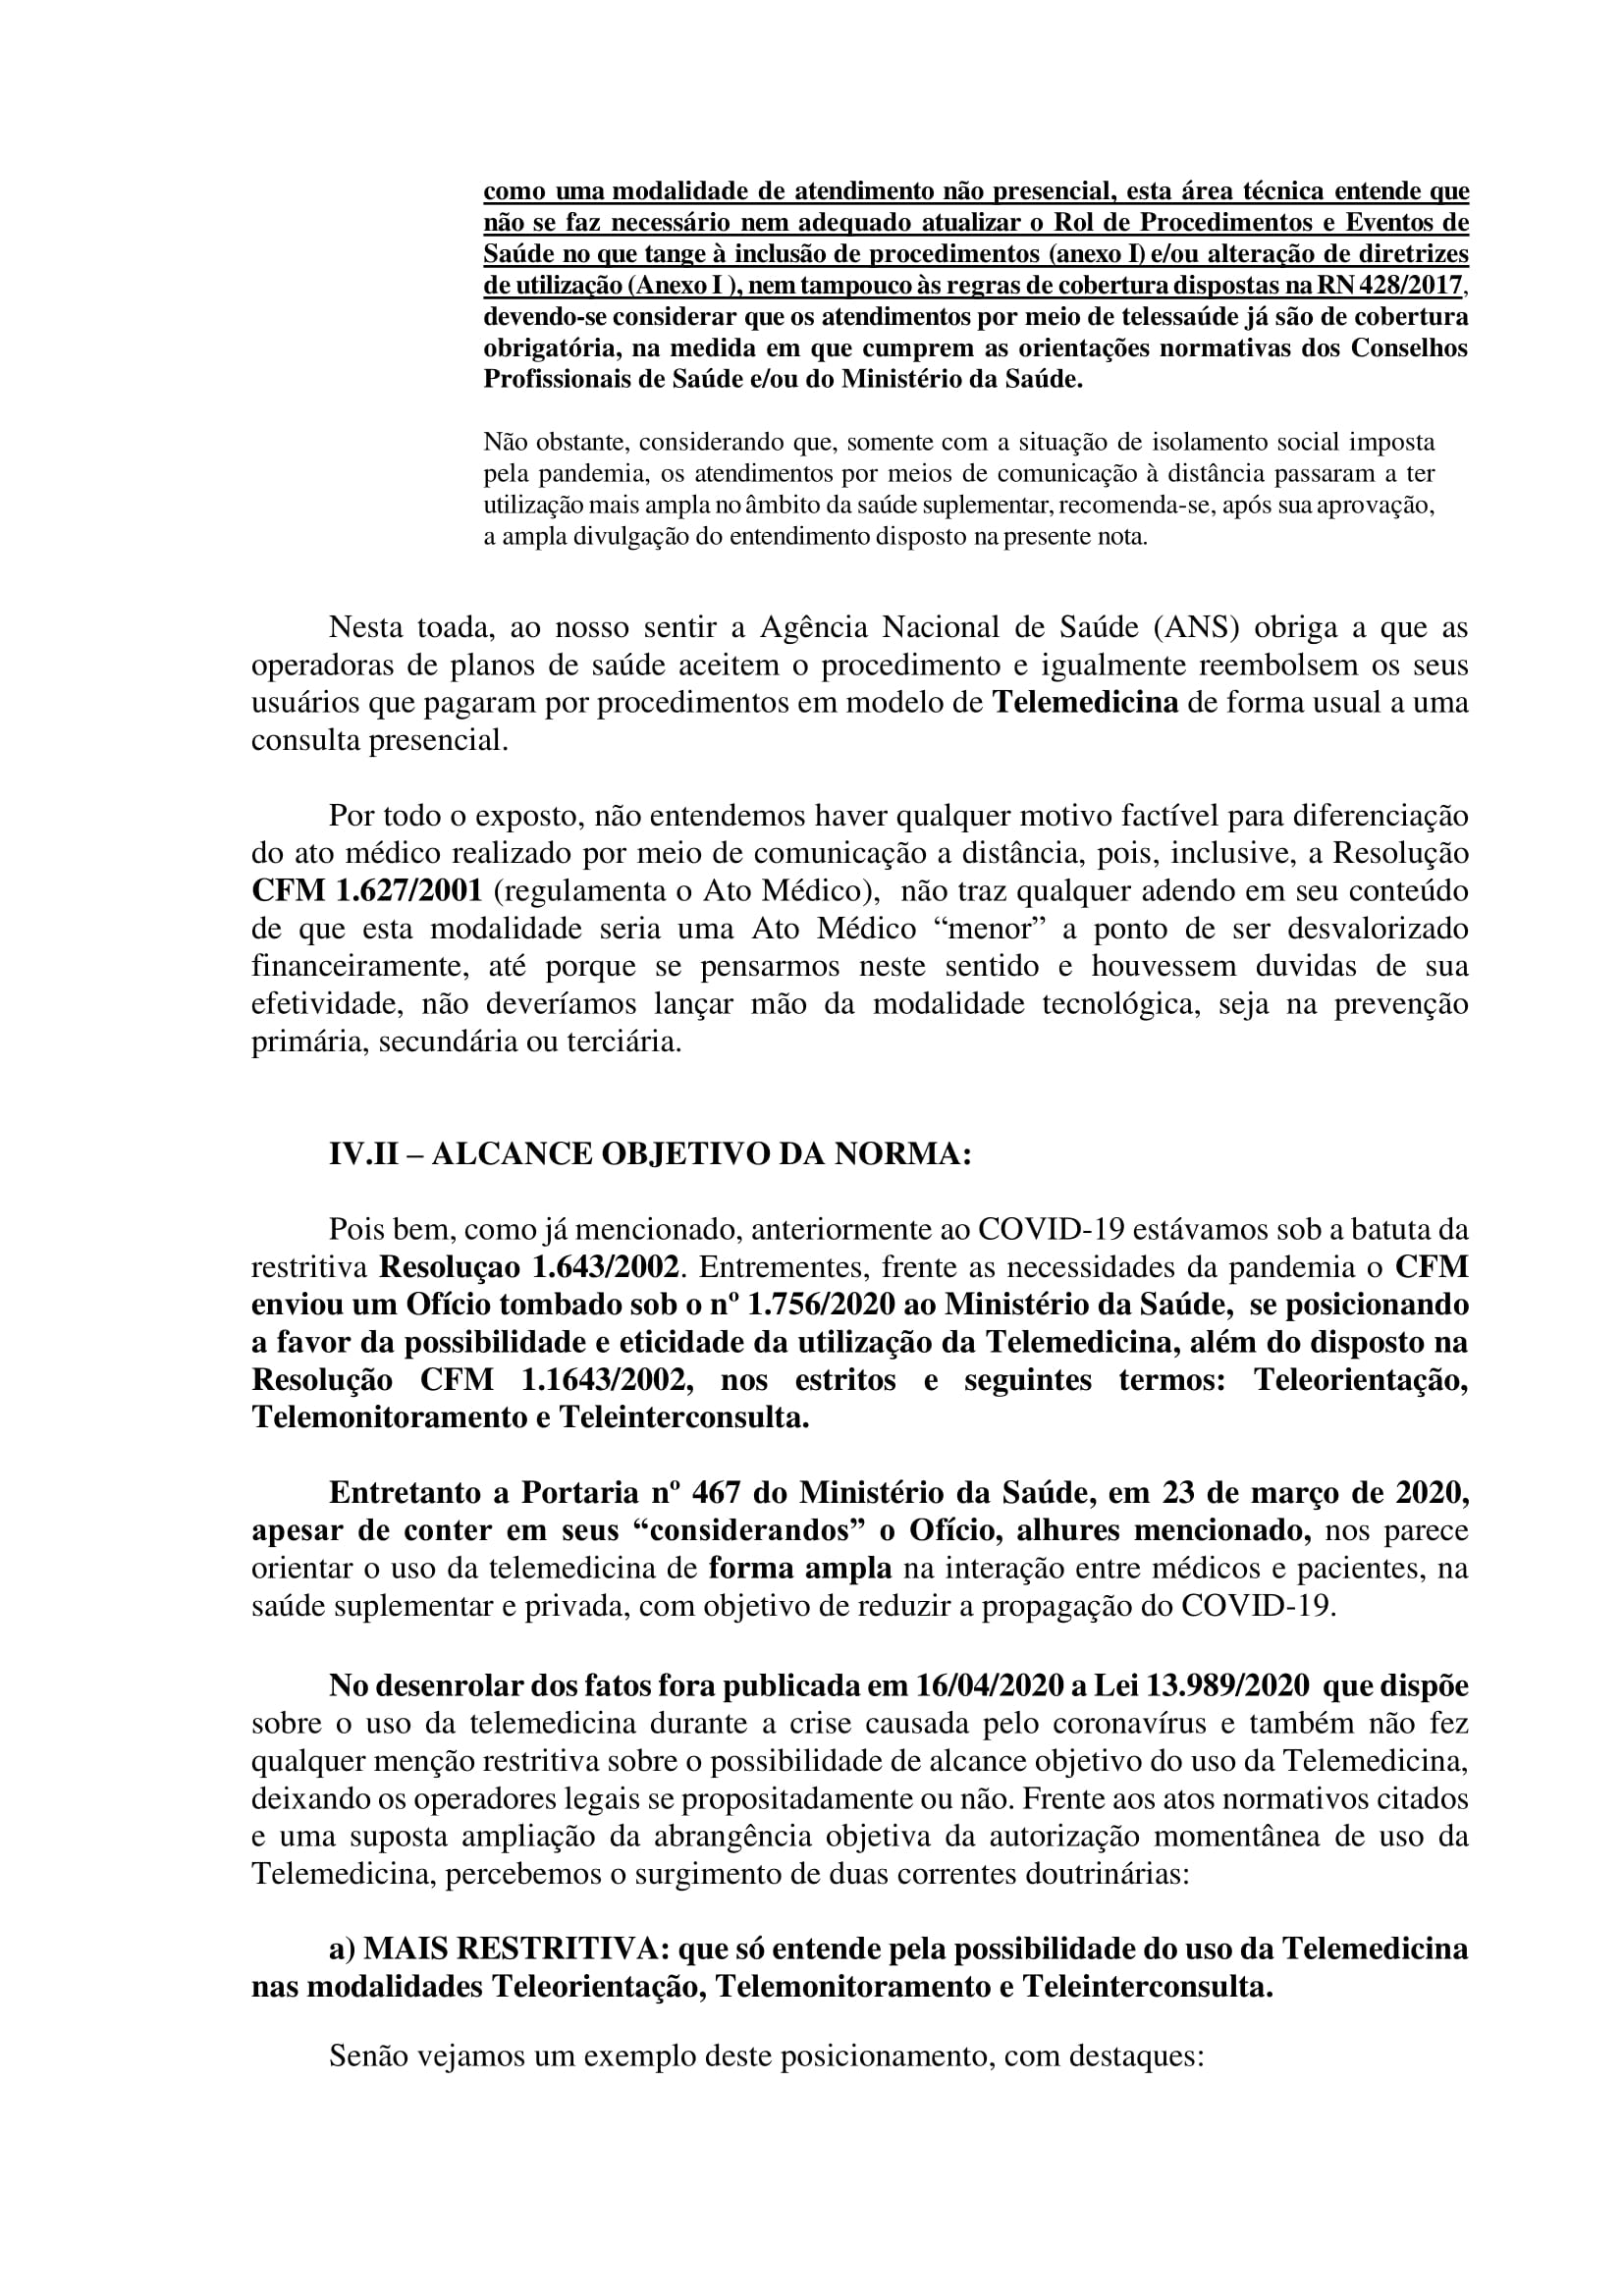 Artigo sobre Telemedicina e suas implicações regulatórias - Tiago Torres-11